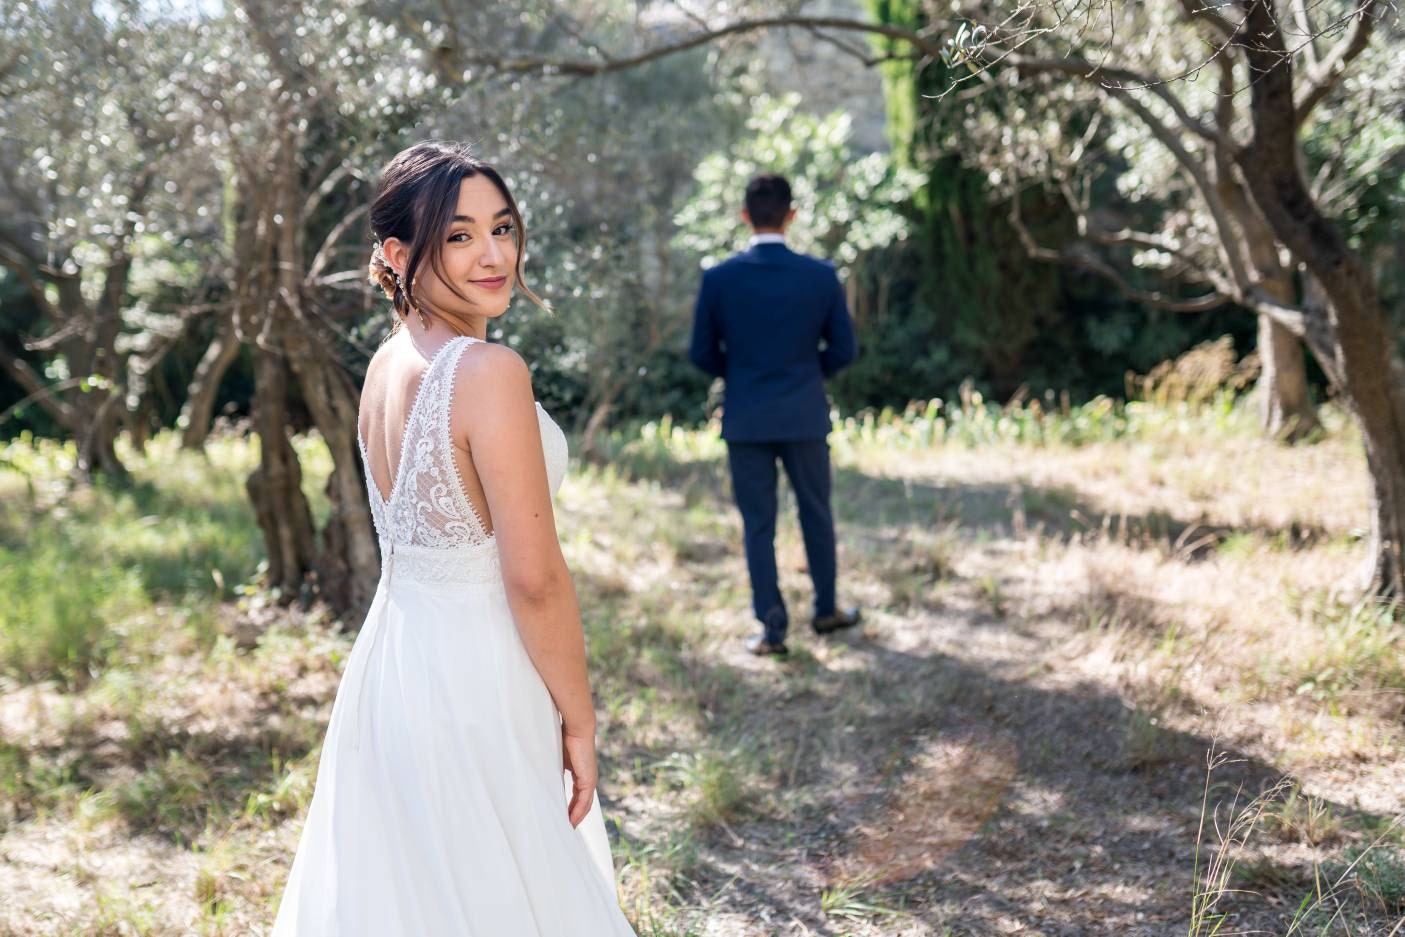 Mariée retournée vers nous dans un jardin provencal au milieu des oliviers avec le mari en arrière plan de dos